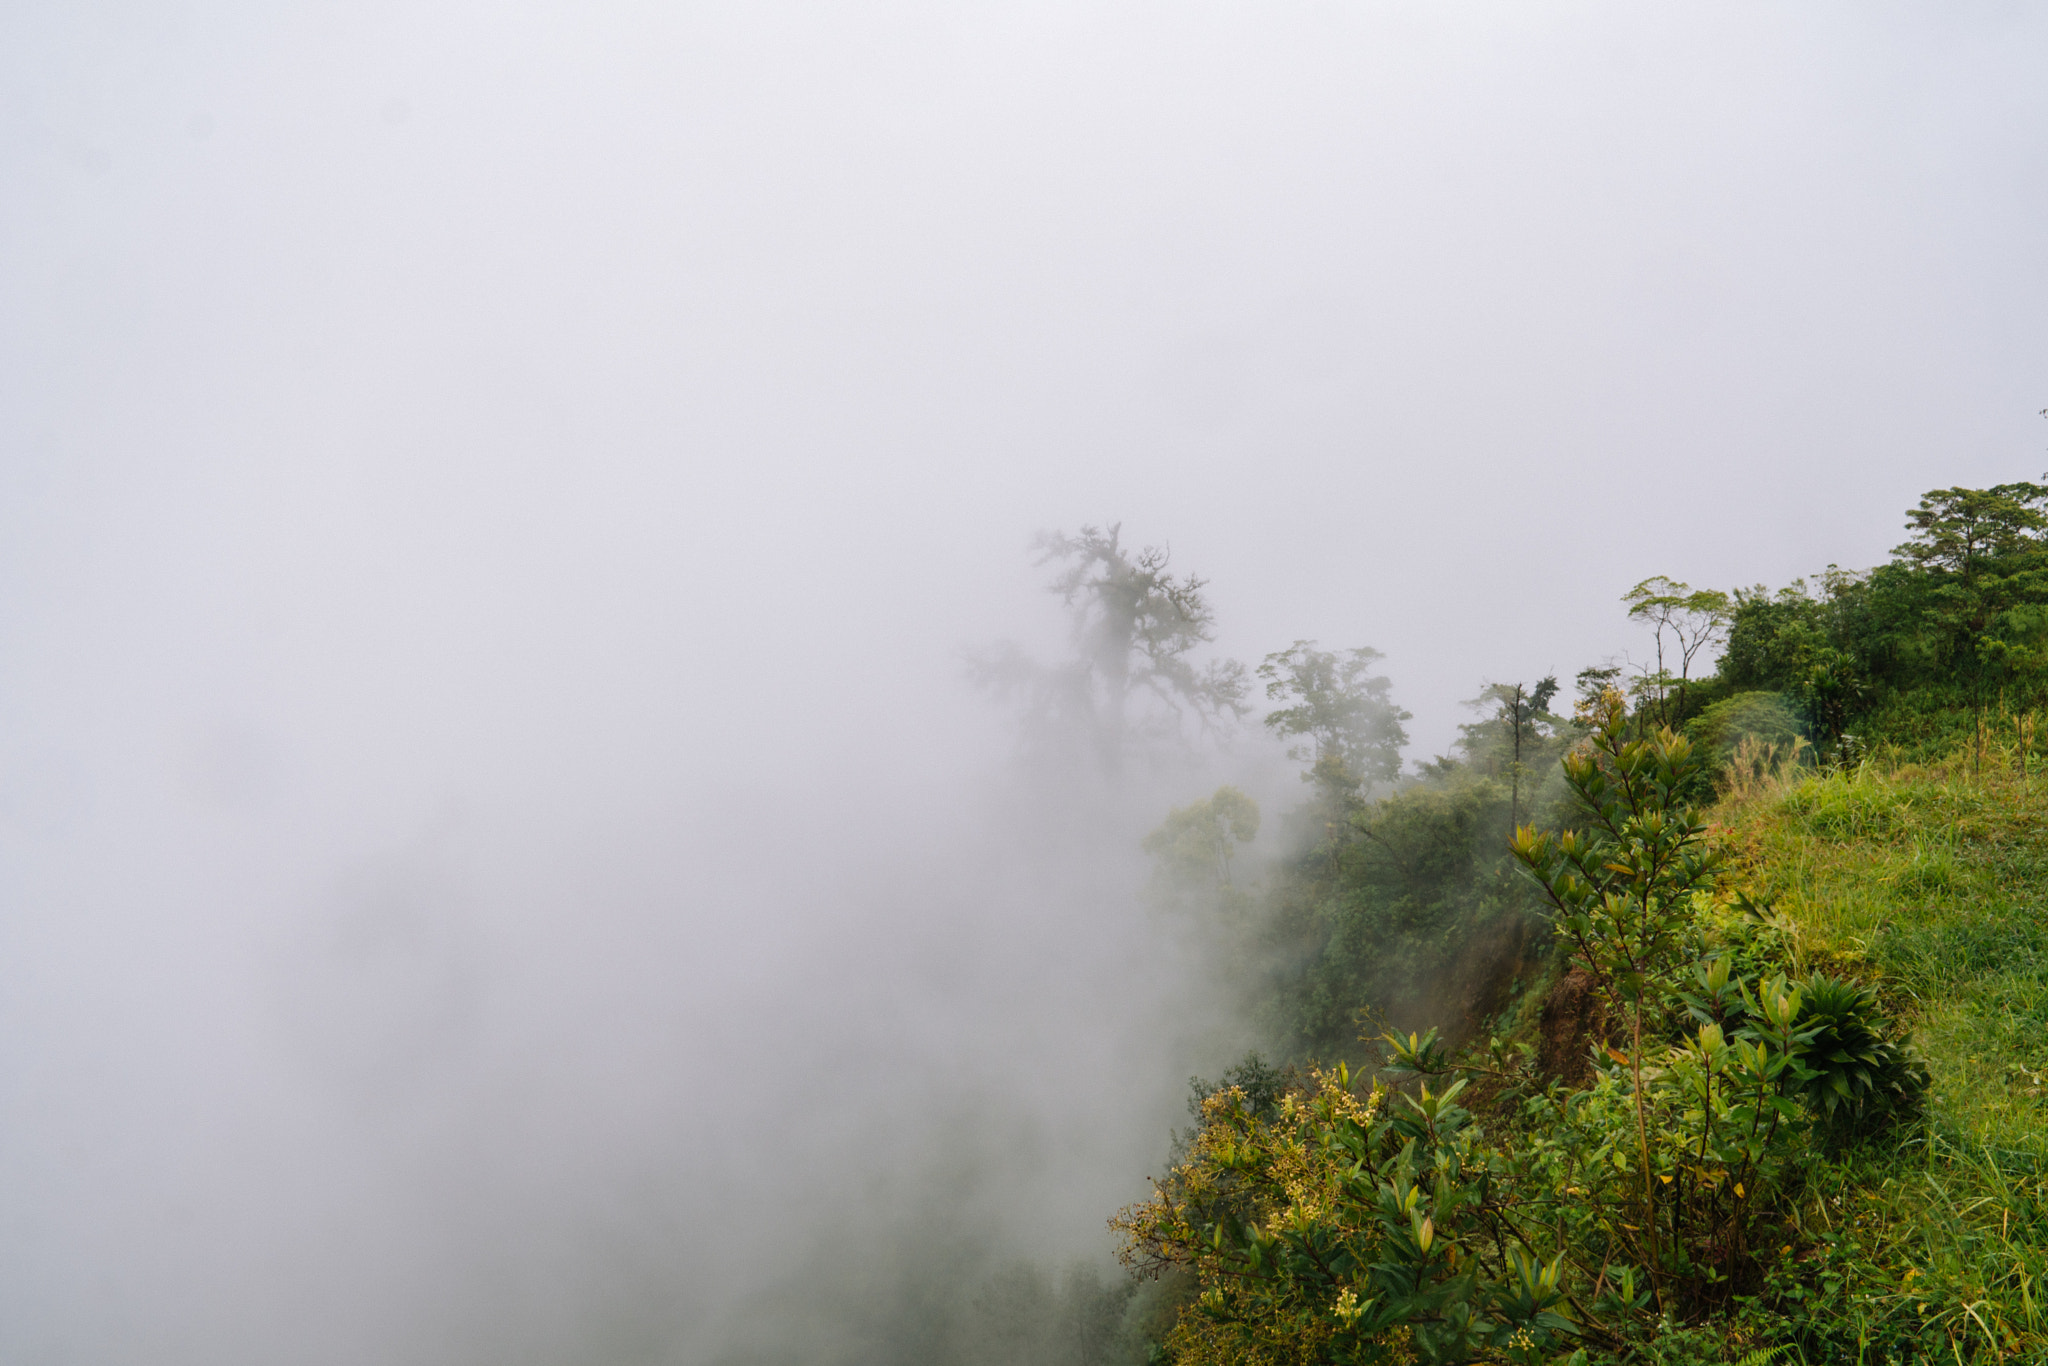 Sony a6300 sample photo. Rainforest fog photography